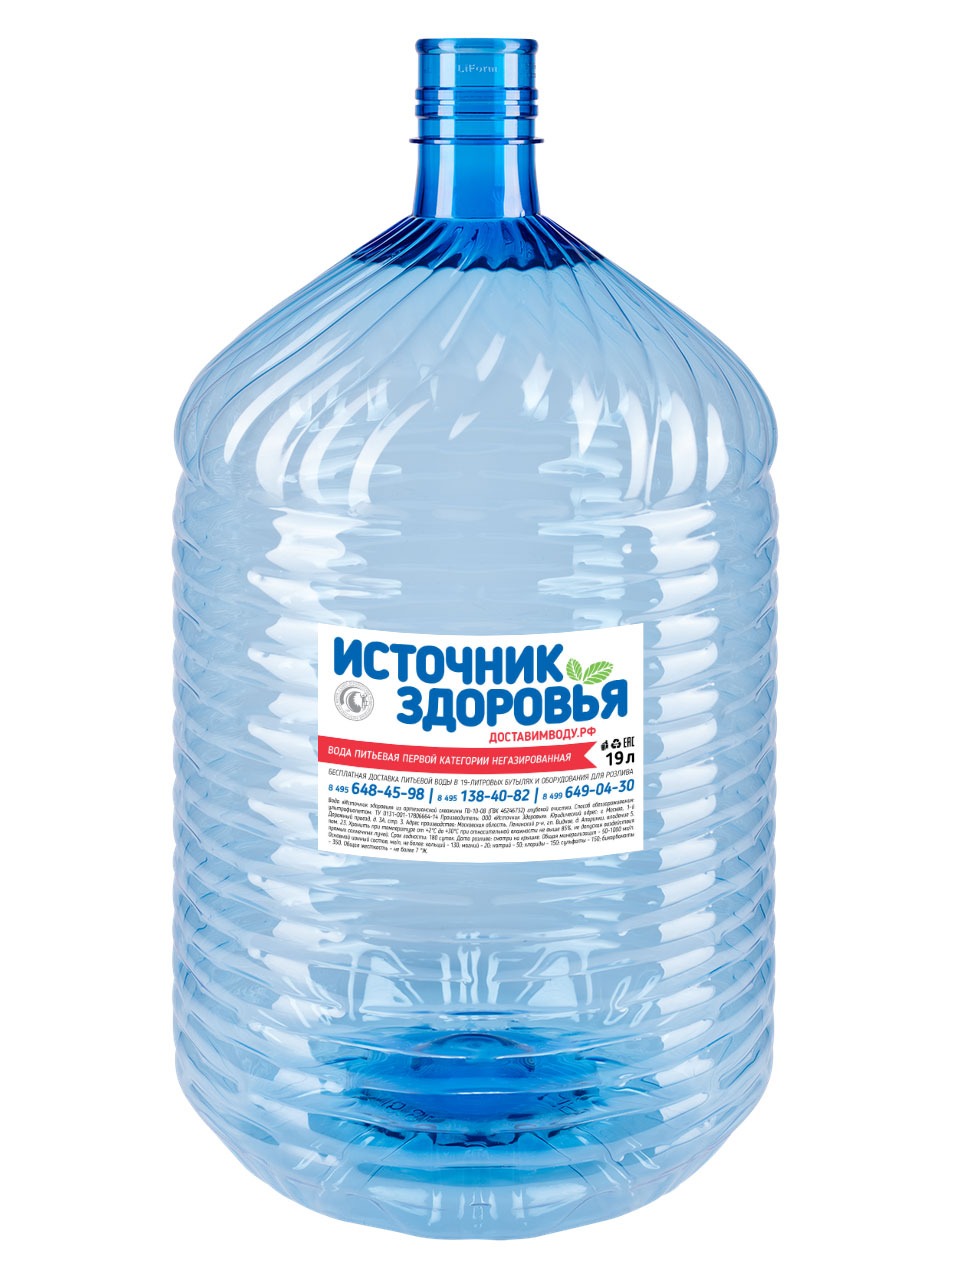 Питьевая артезианская вода "Источник здоровья" 19л Первой категории - В ОДНОРАЗОВОЙ ТАРЕ